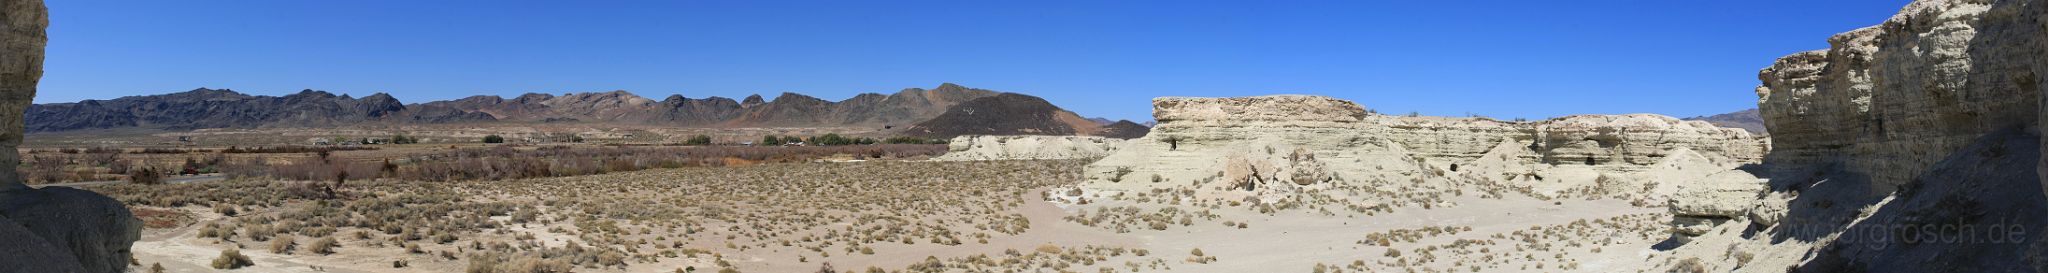 20090310-deathvalley.jpg - Wüste nähe Shoshone, CA